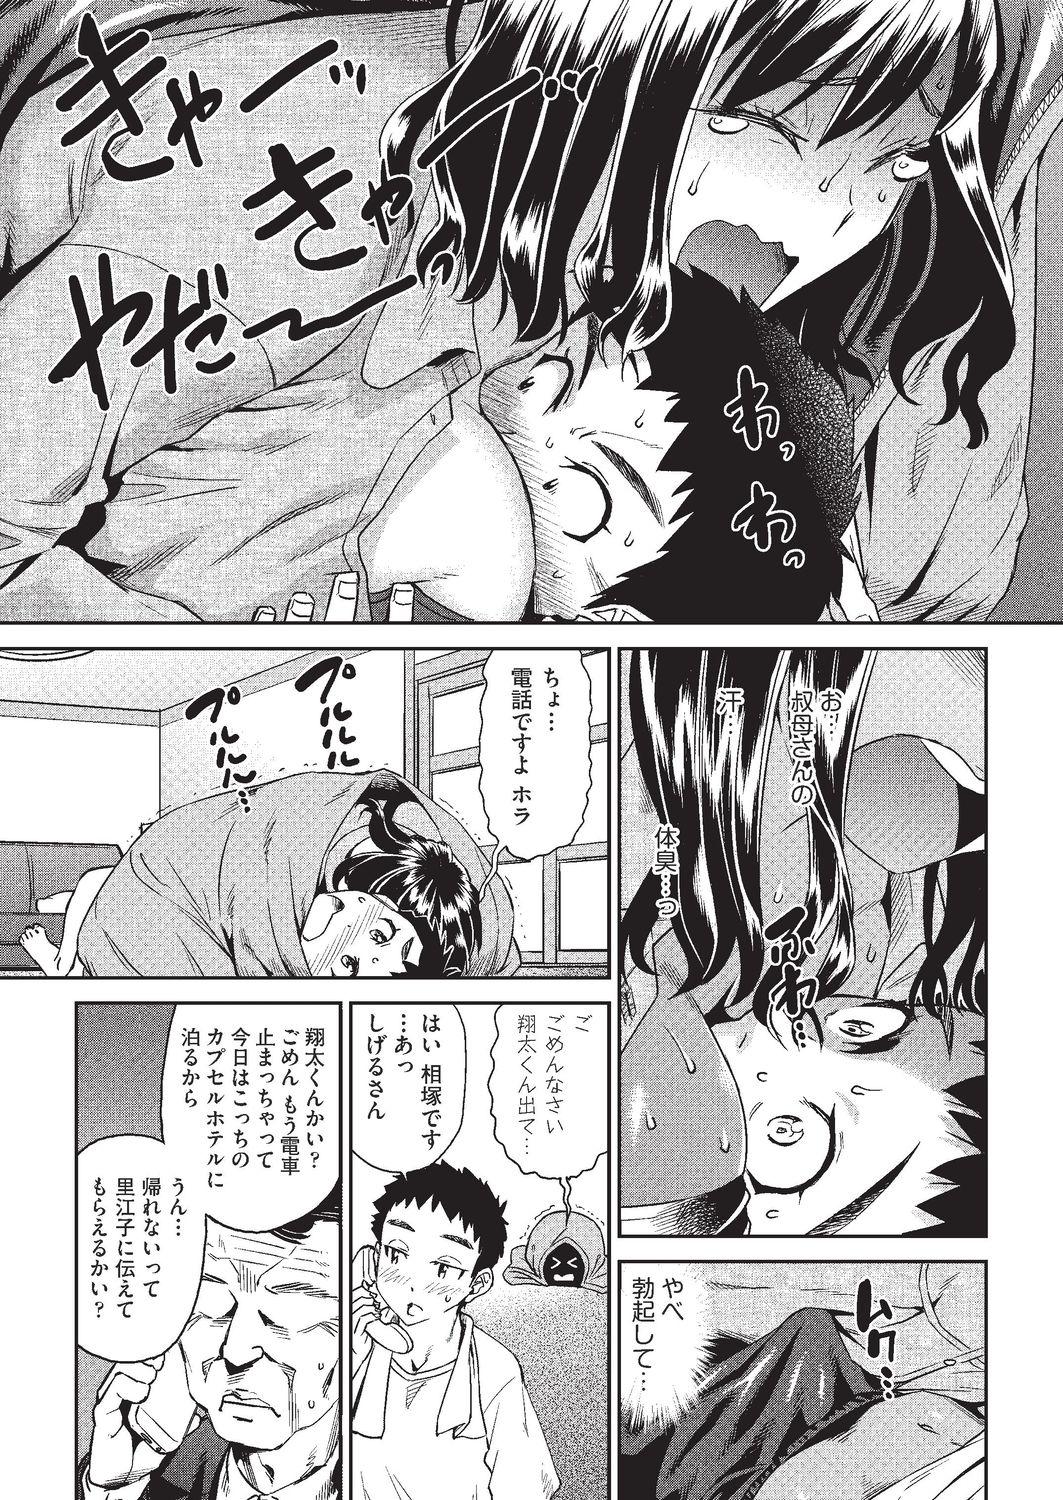 Gaydudes Arashi no Yoru ni Dicksucking - Page 5